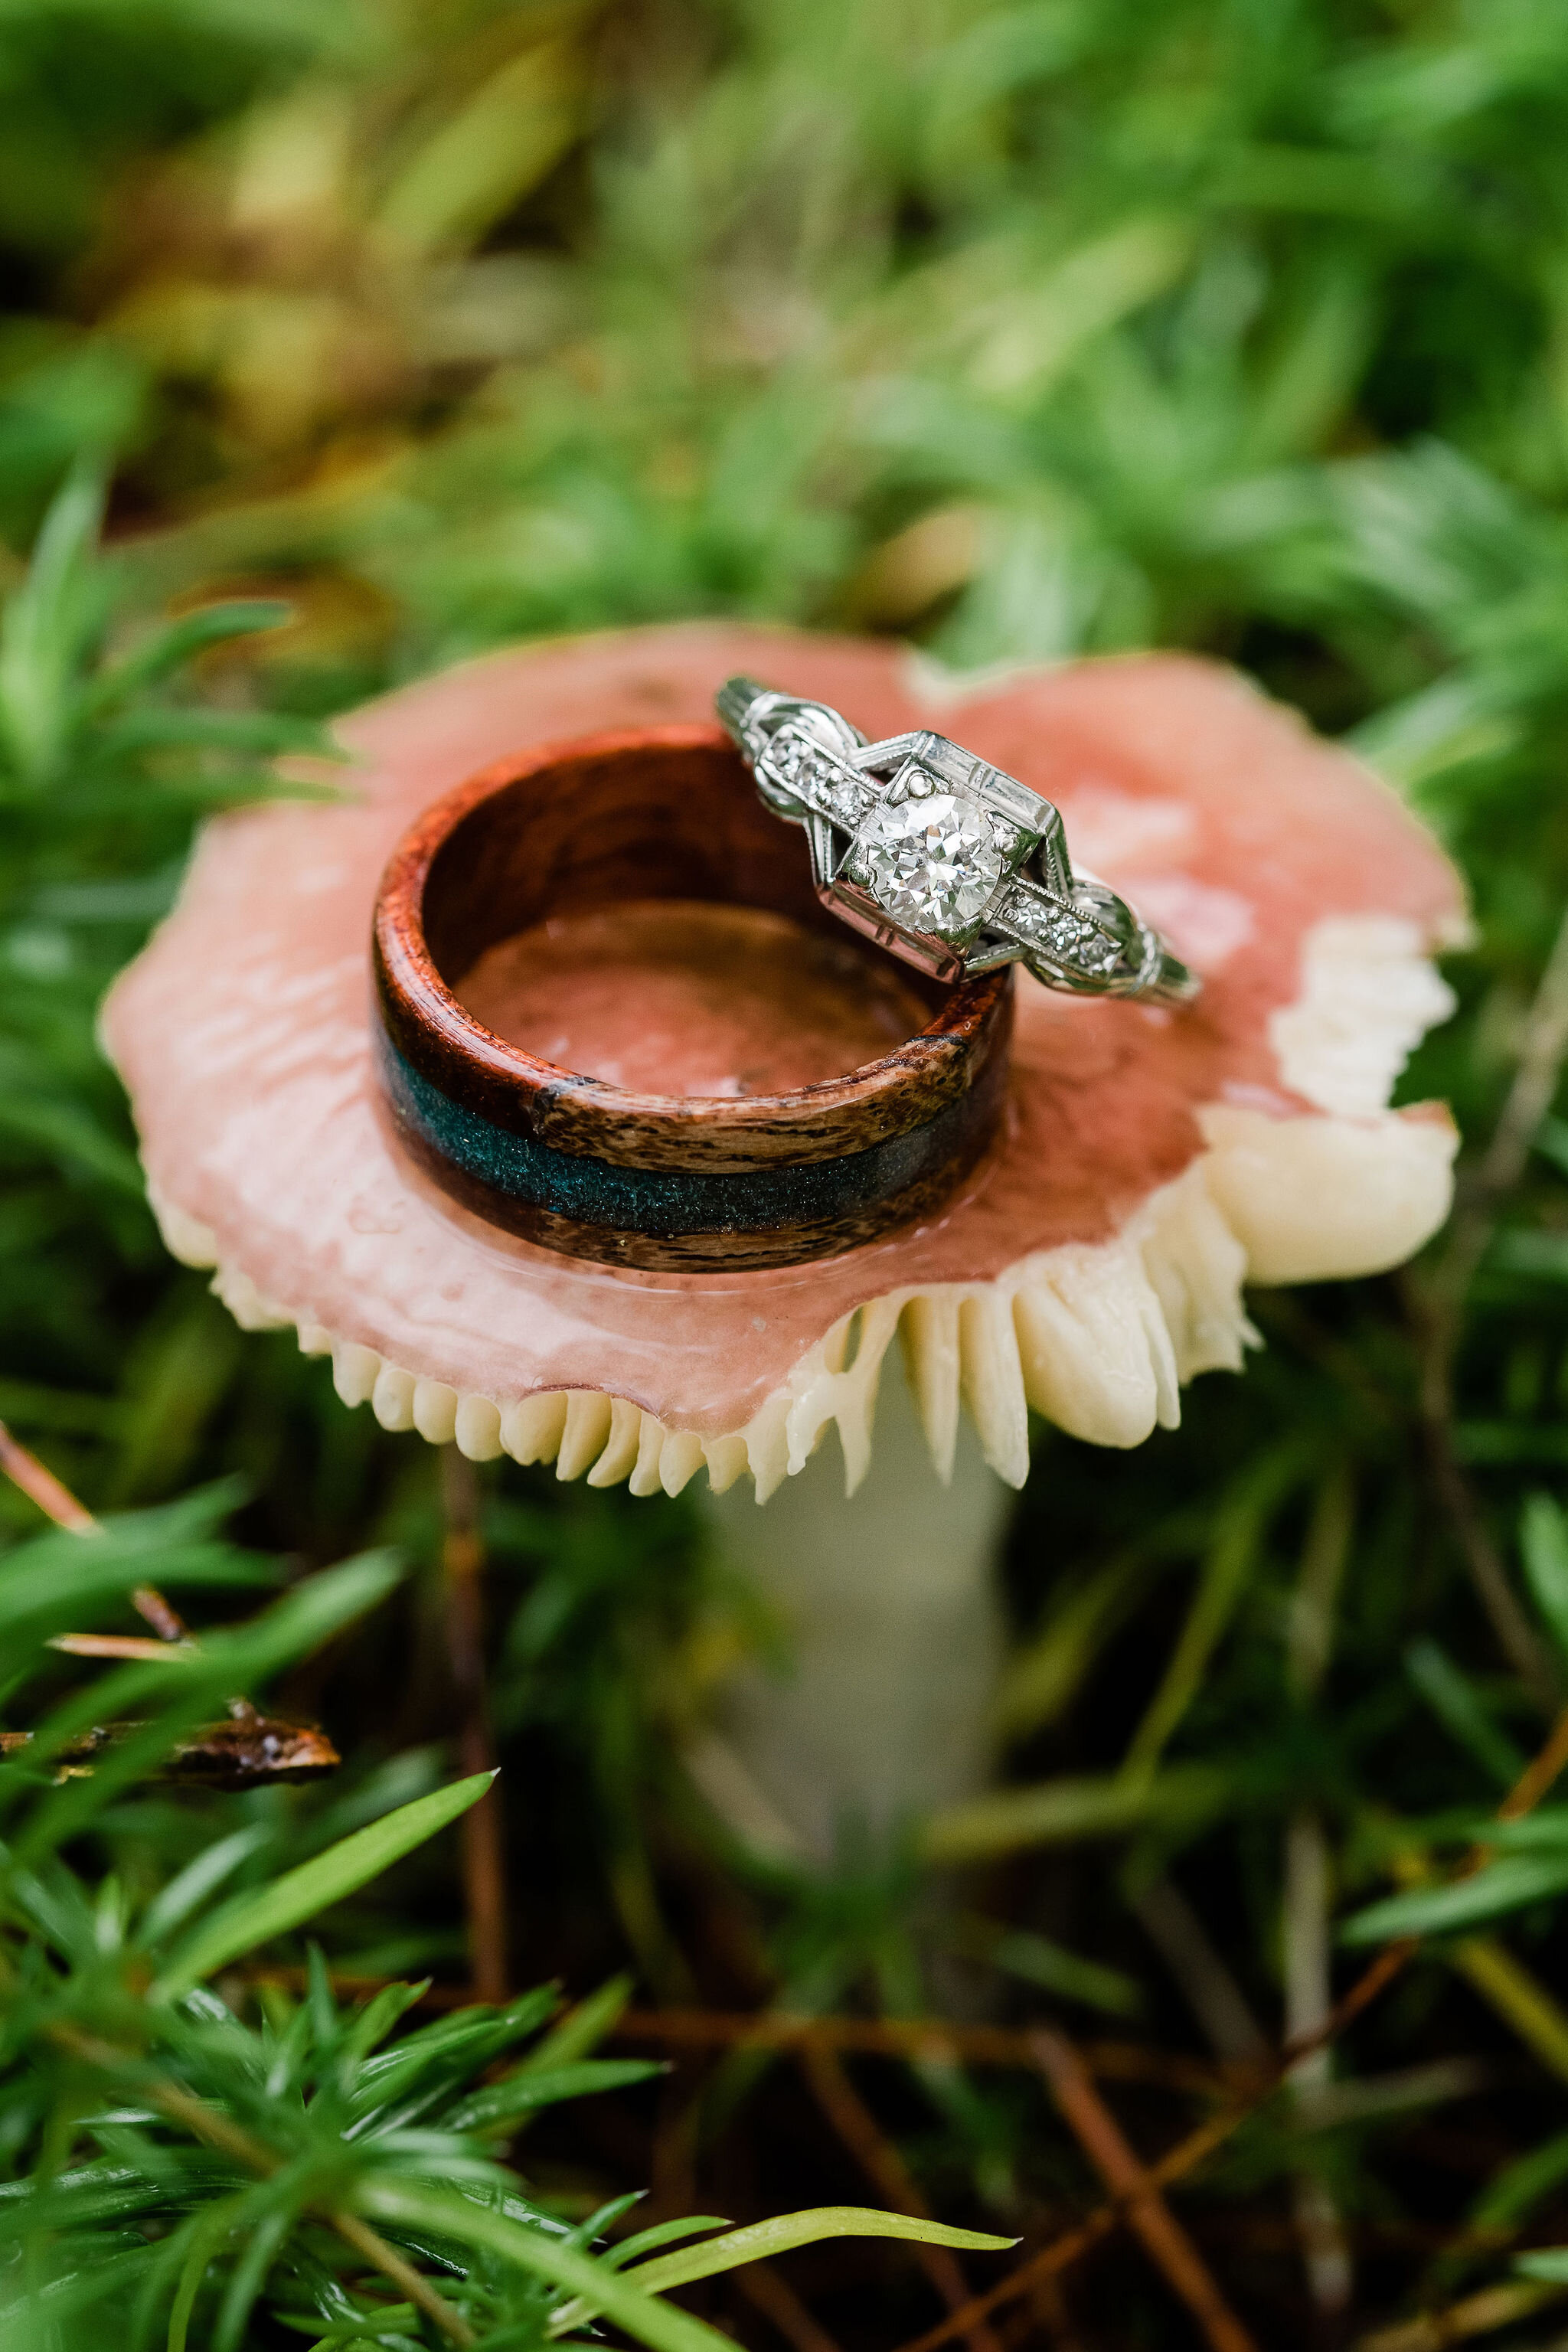 Wedding rings on a mushroom